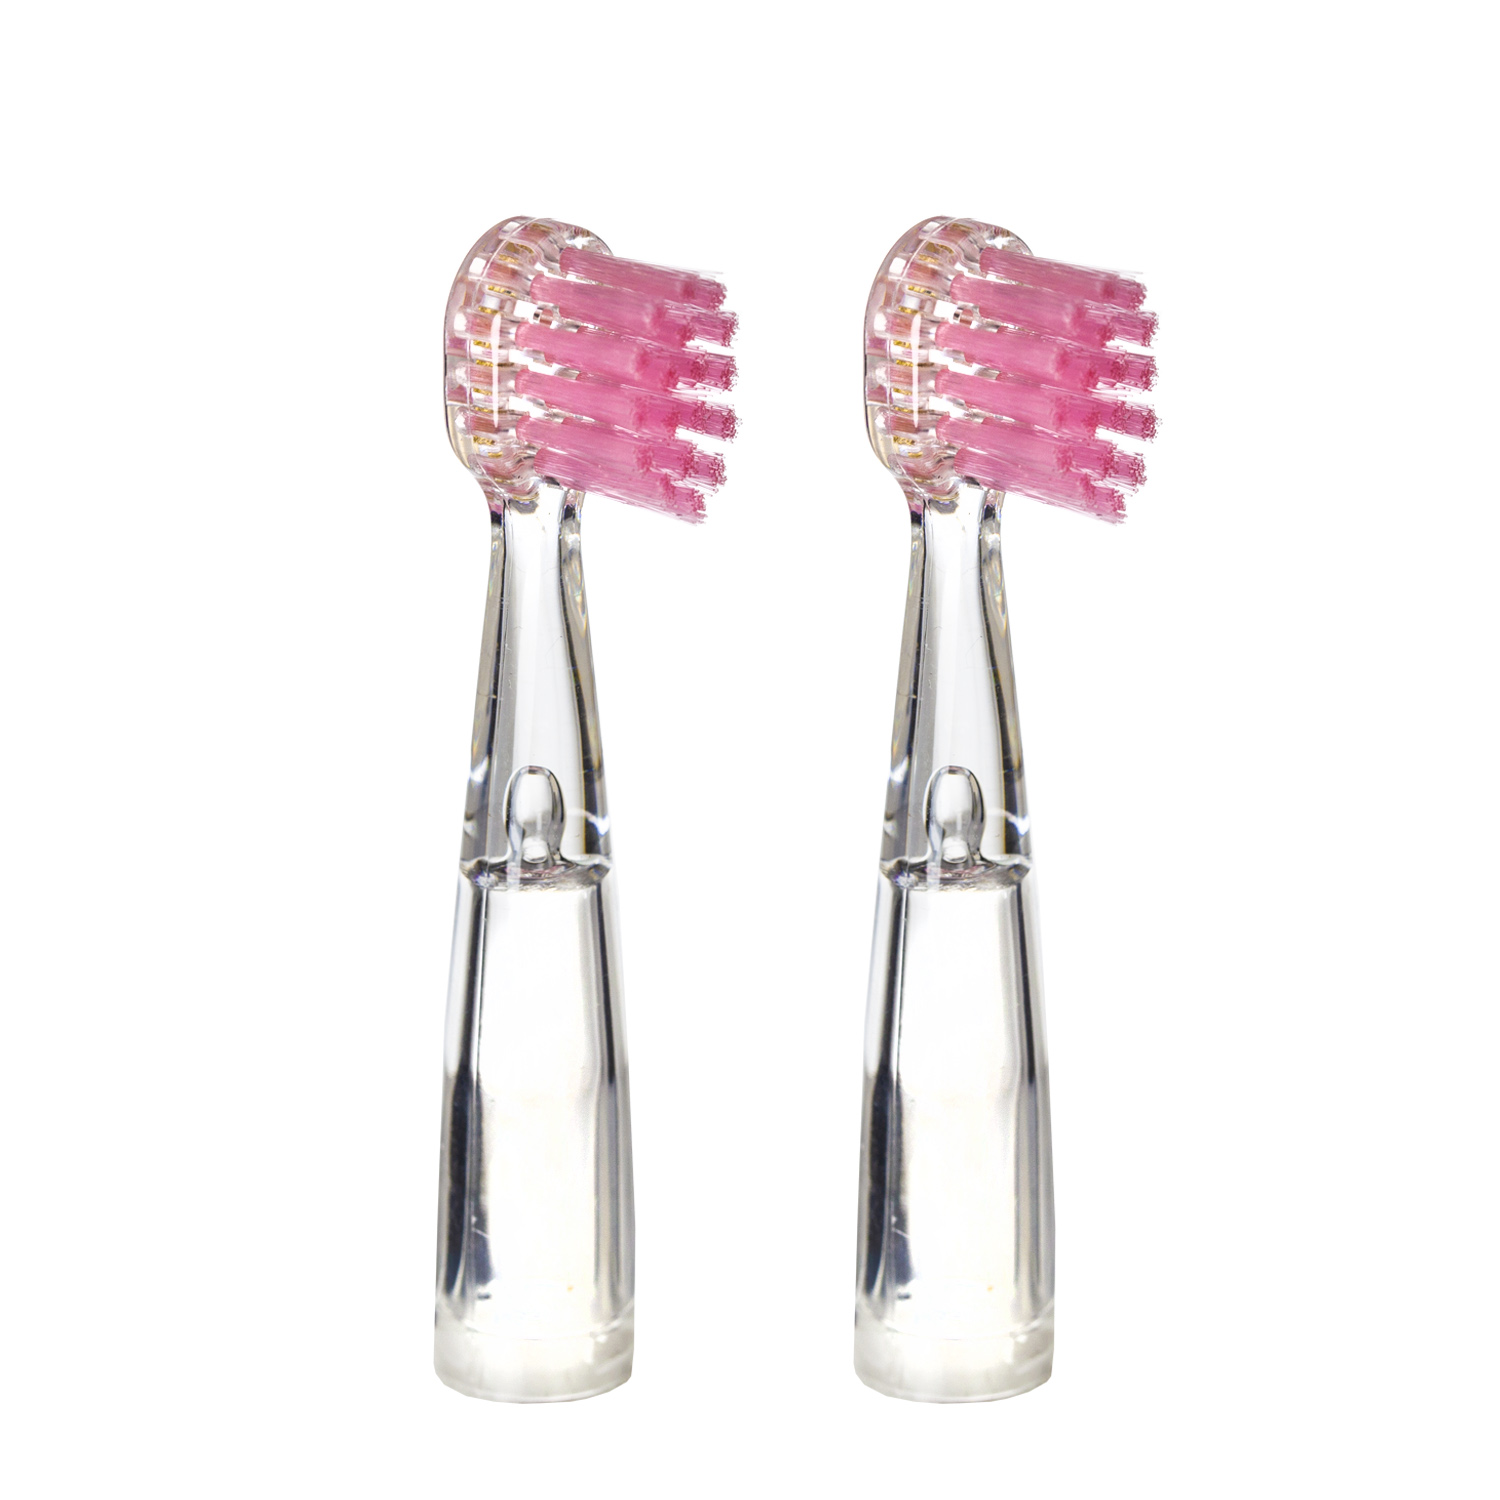 Насадка для детской электрической зубной щетки Revyline RL 025, розовая, 2 шт., 6171 назальные насадки для revyline rl100 300 400 500 600 700